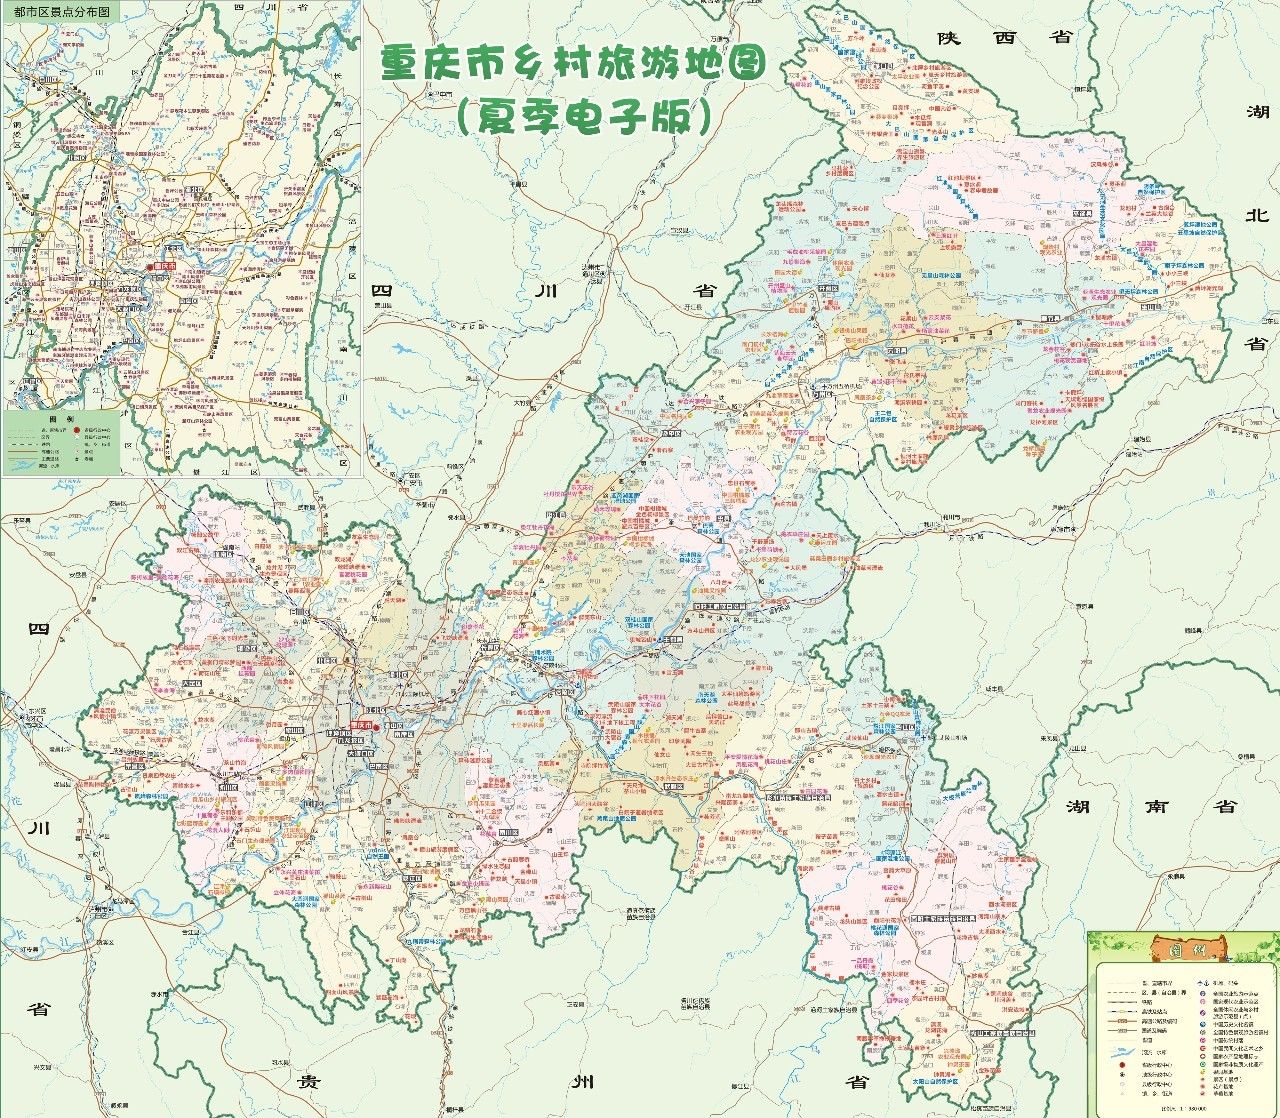 《重庆市乡村旅游地图》新鲜出炉,大长寿亮相!